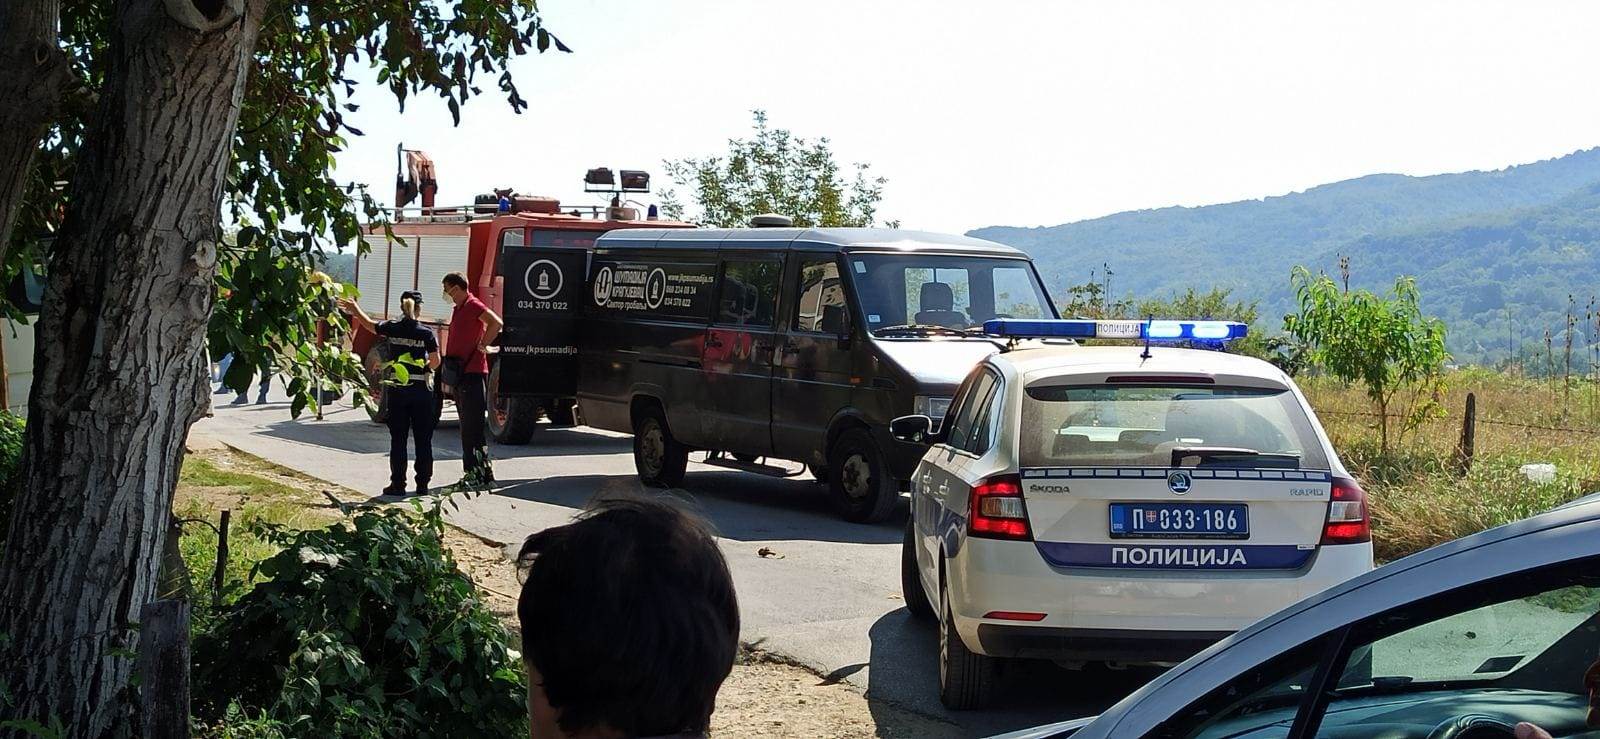  Kragujevac saobraćajna nesreća autobus pokosio taksistu 